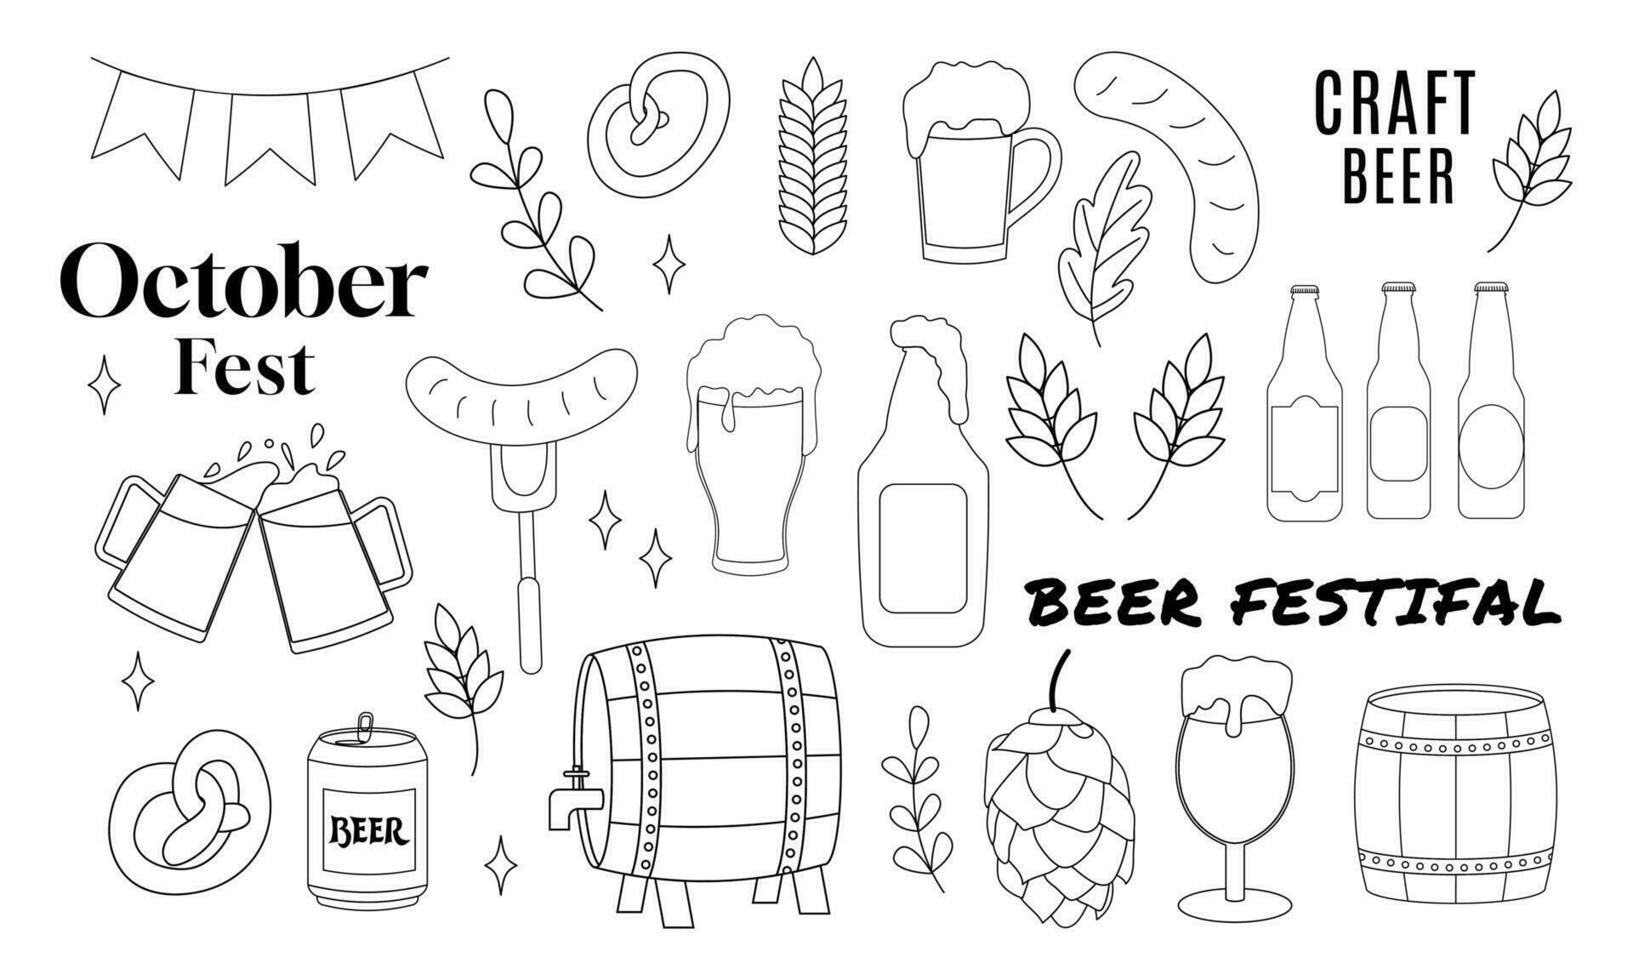 Bier einstellen handgemalt Gliederung Kritzeleien Vektor Illustration mit Beschriftung